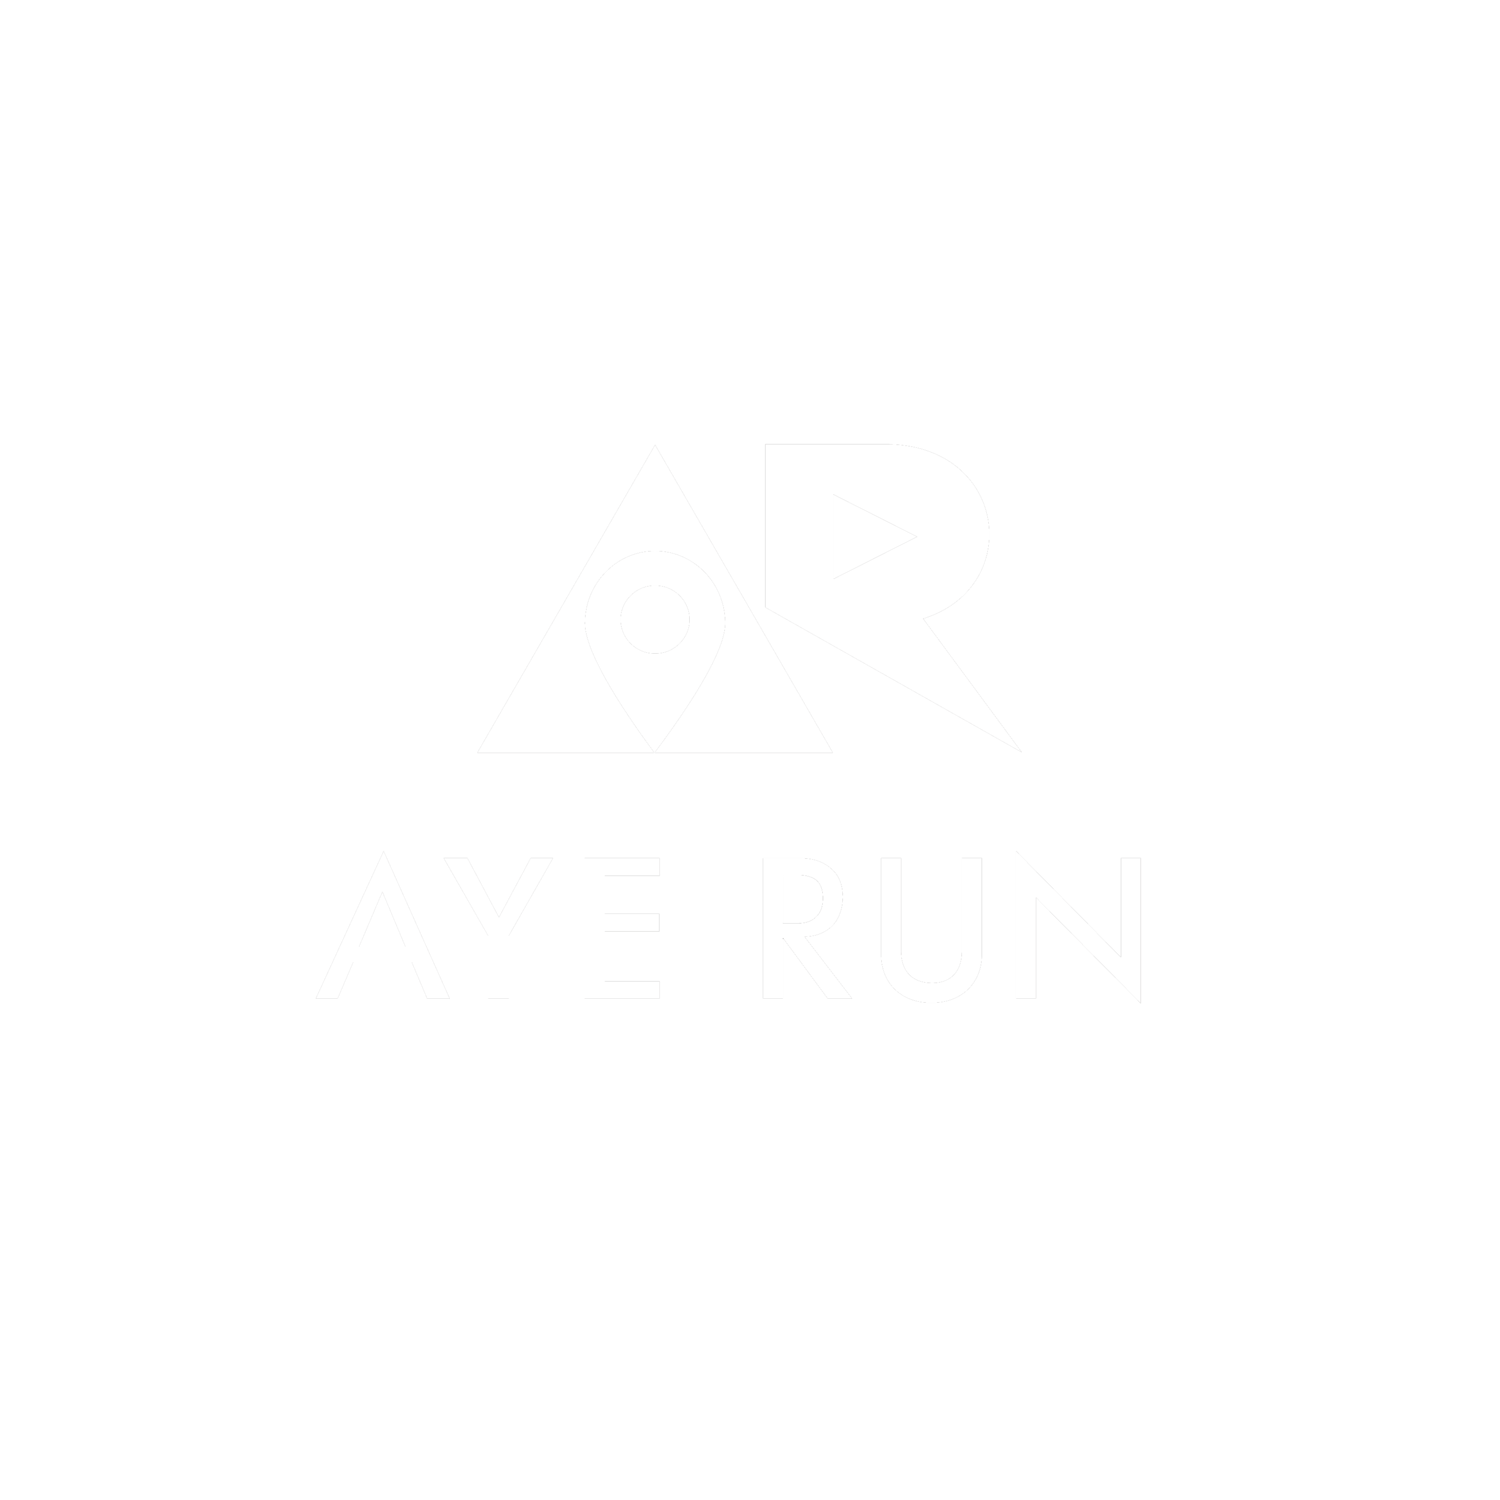 Aye Run